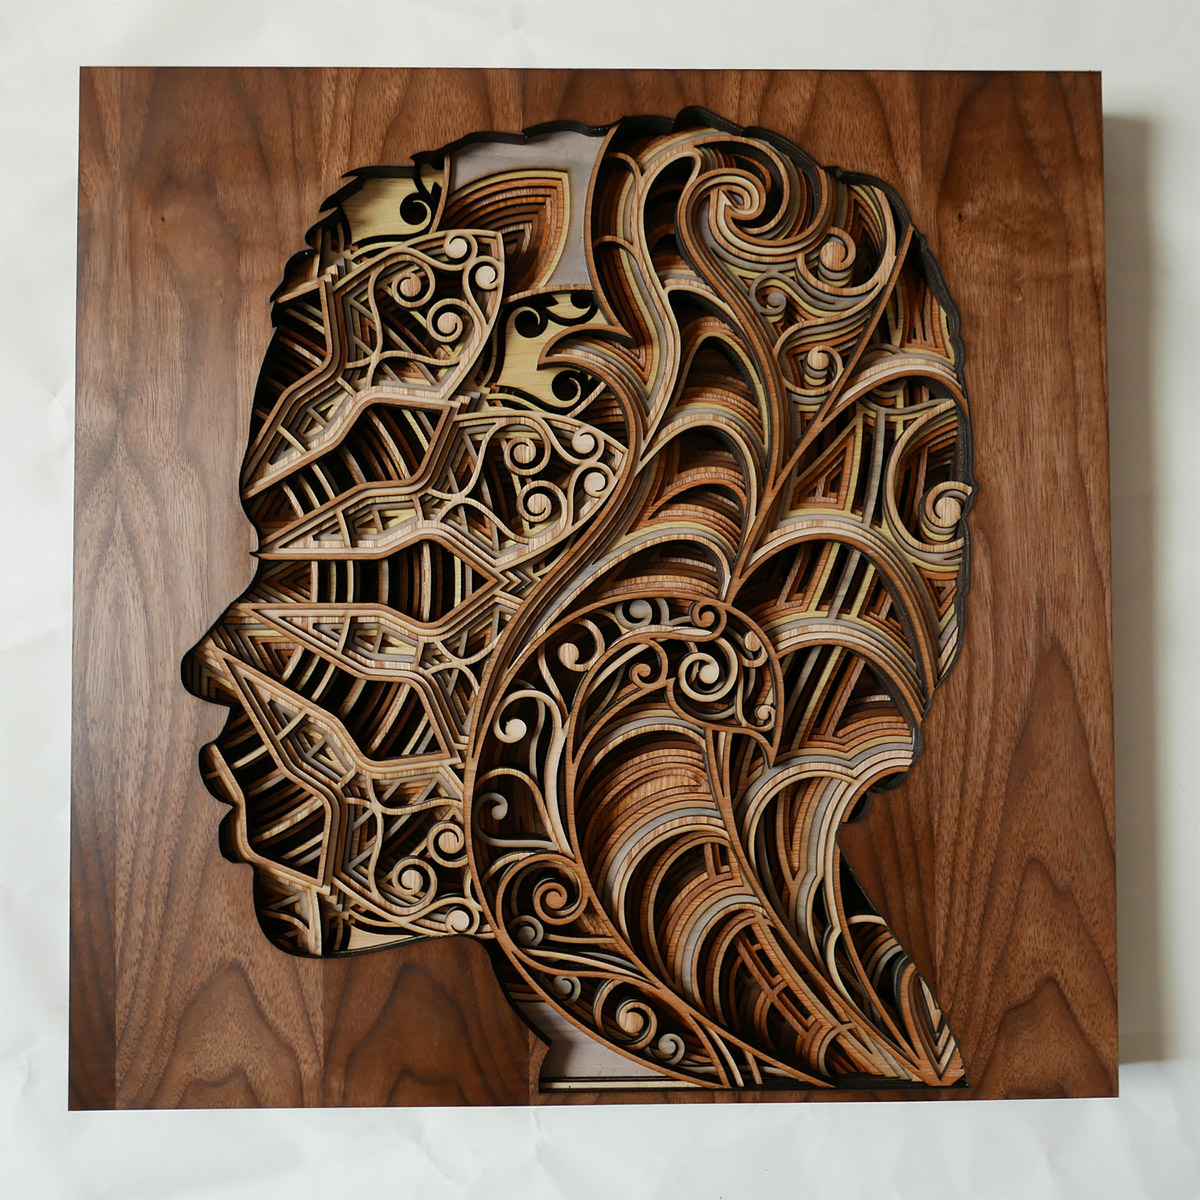 Laser Cut Wood Sculptures by Gabriel Schama - Art - Design - Creative - Blog